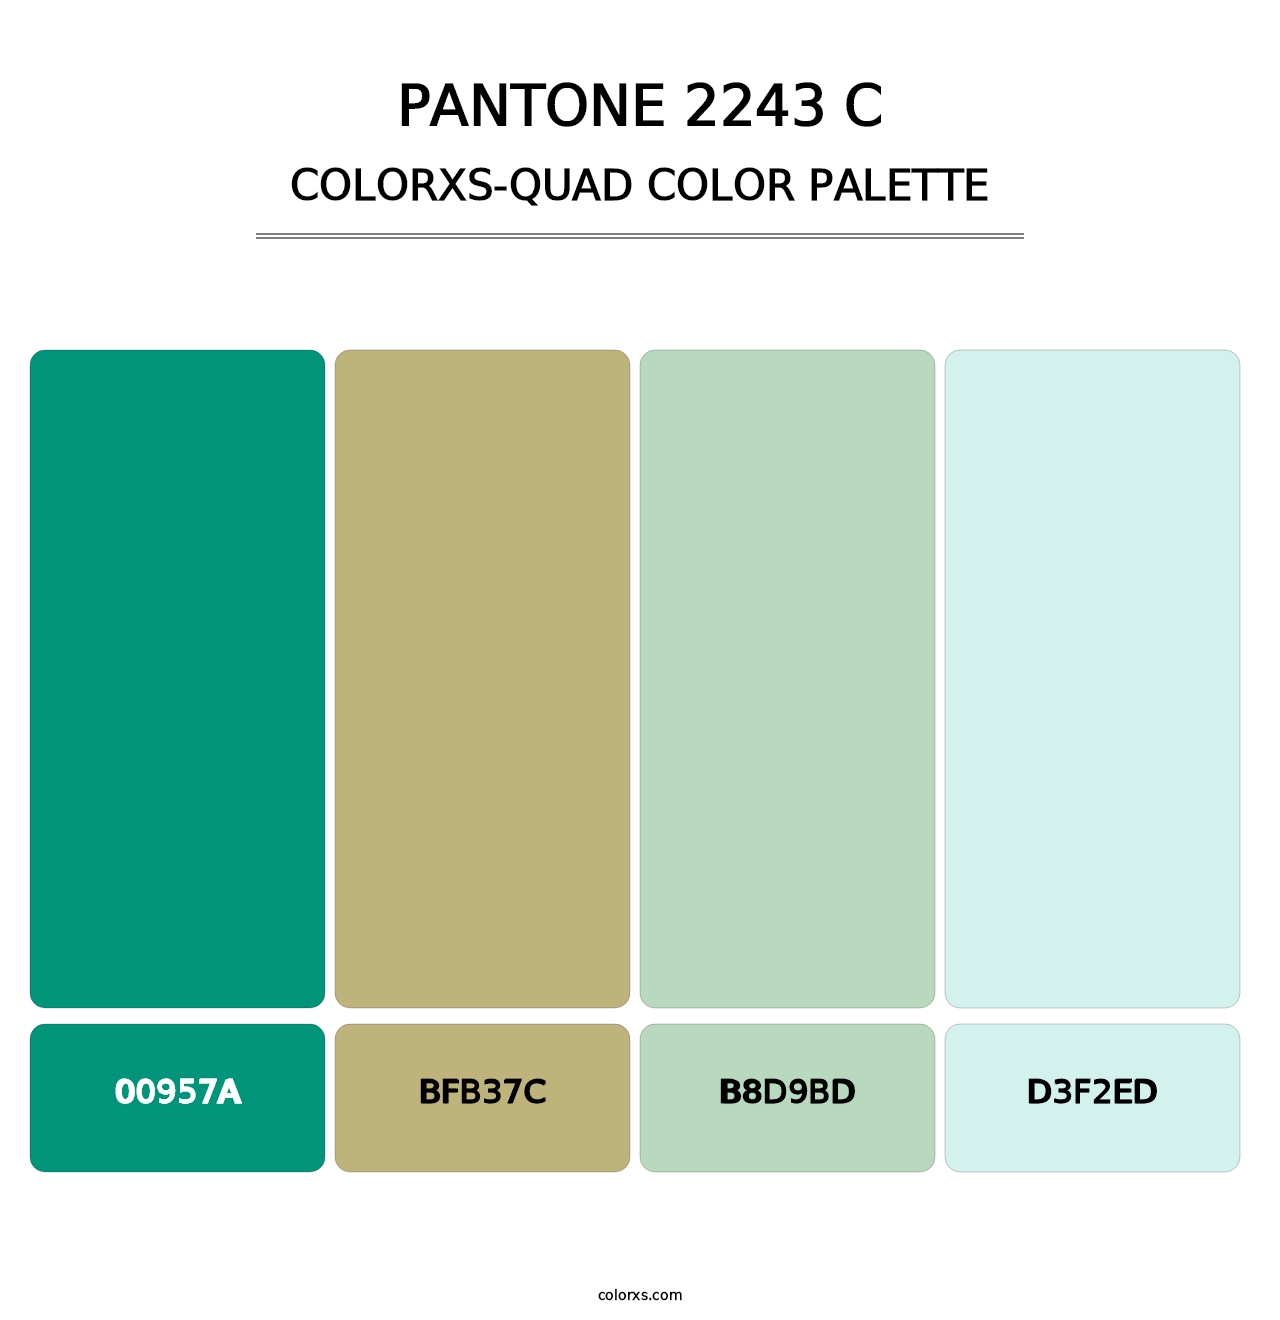 PANTONE 2243 C - Colorxs Quad Palette